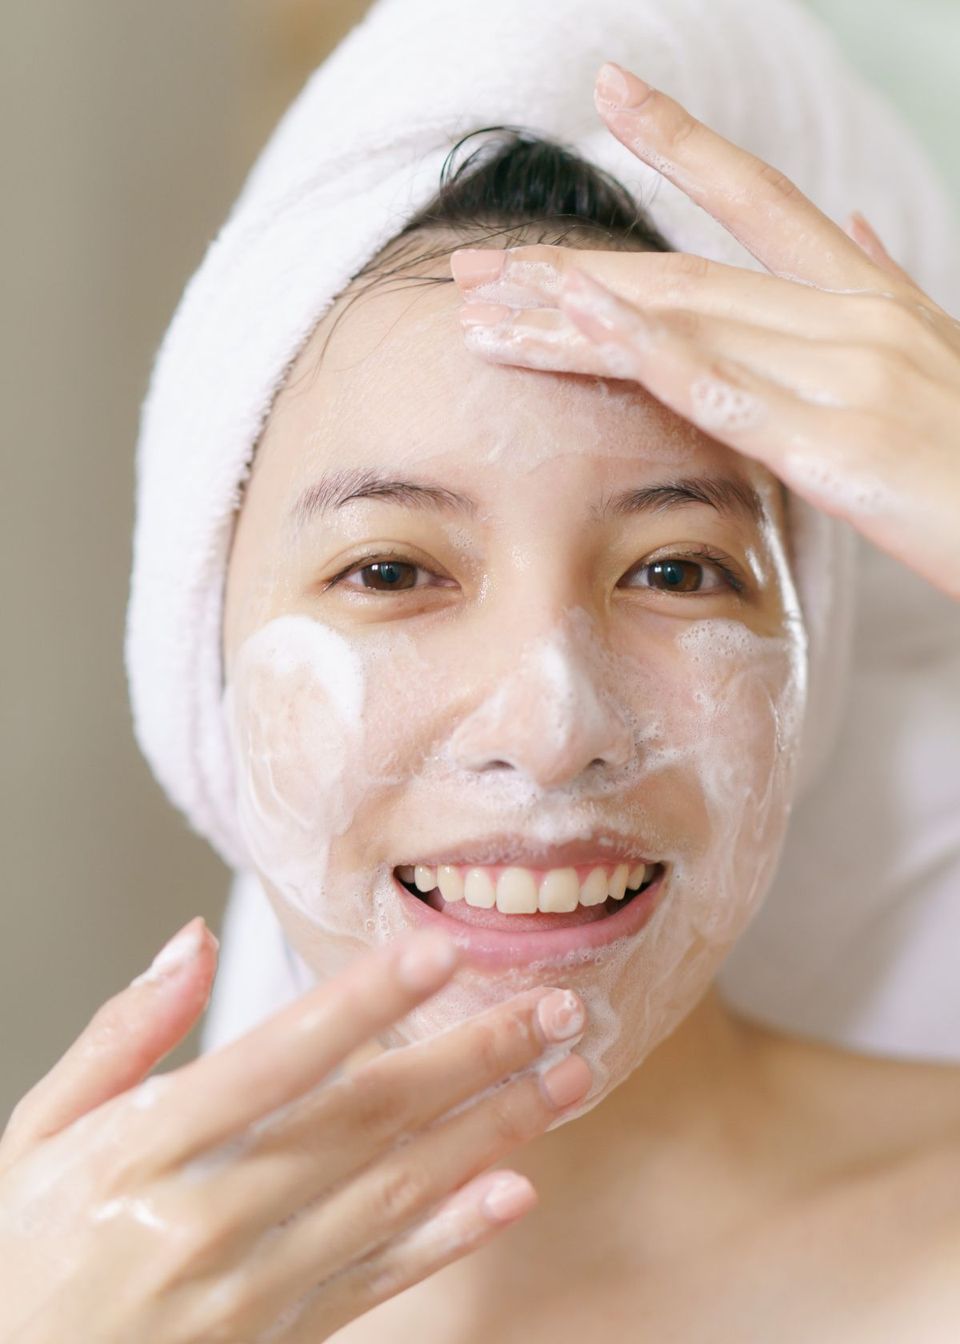 Best Korean Cleanser For Acne Prone Skin